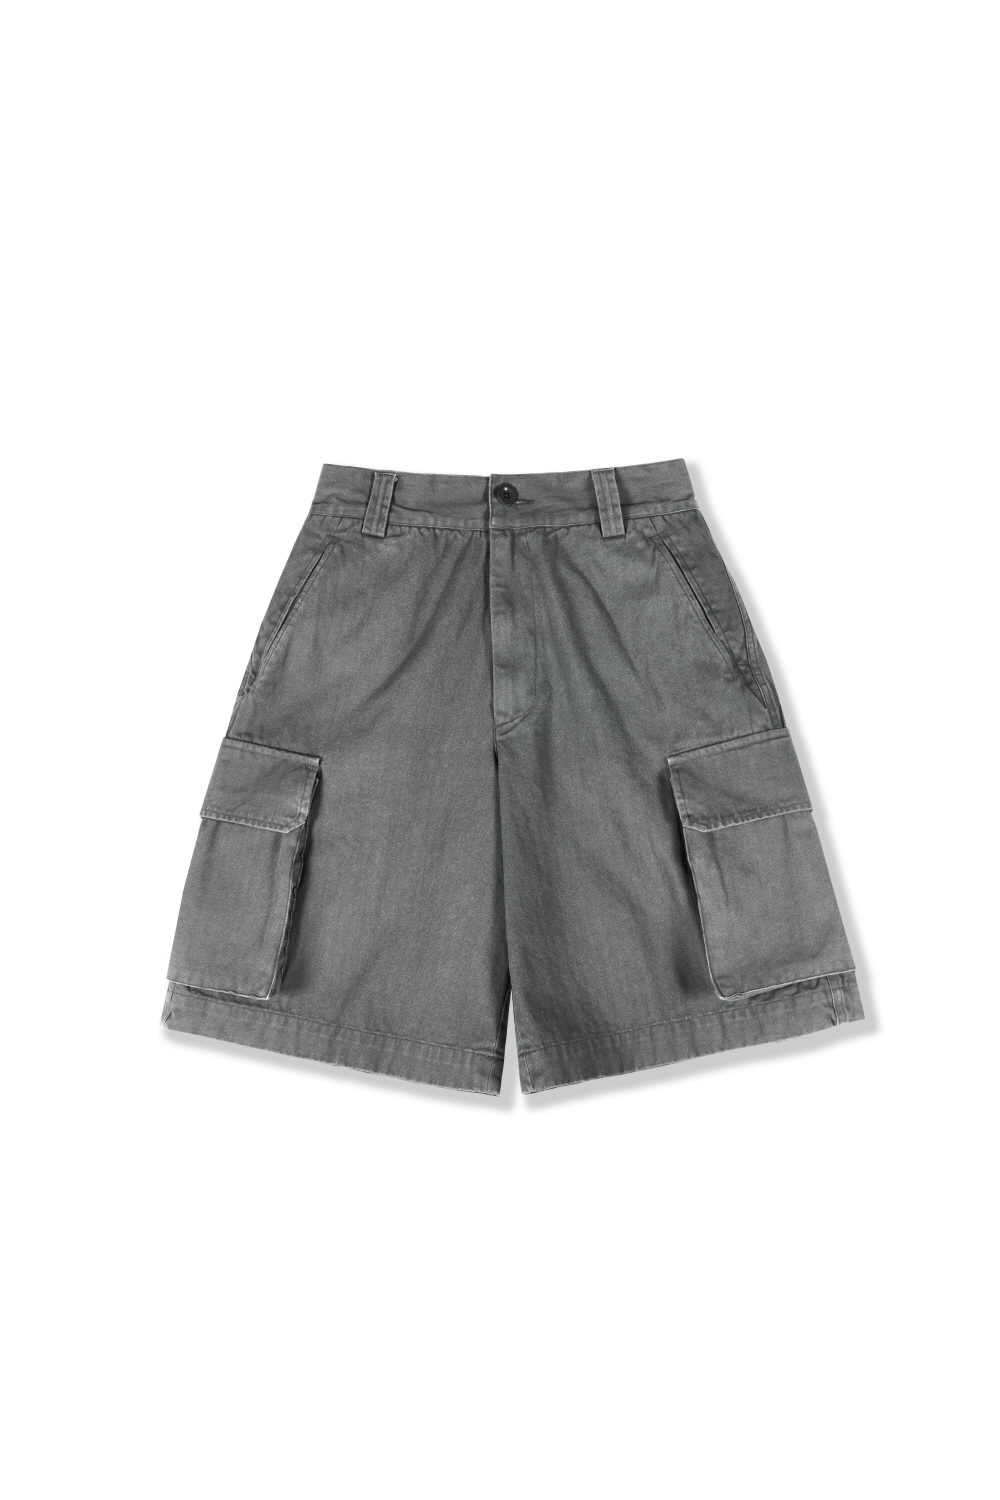 [4/30 (화) 발매예정] M-47 shorts(HBT)_gray